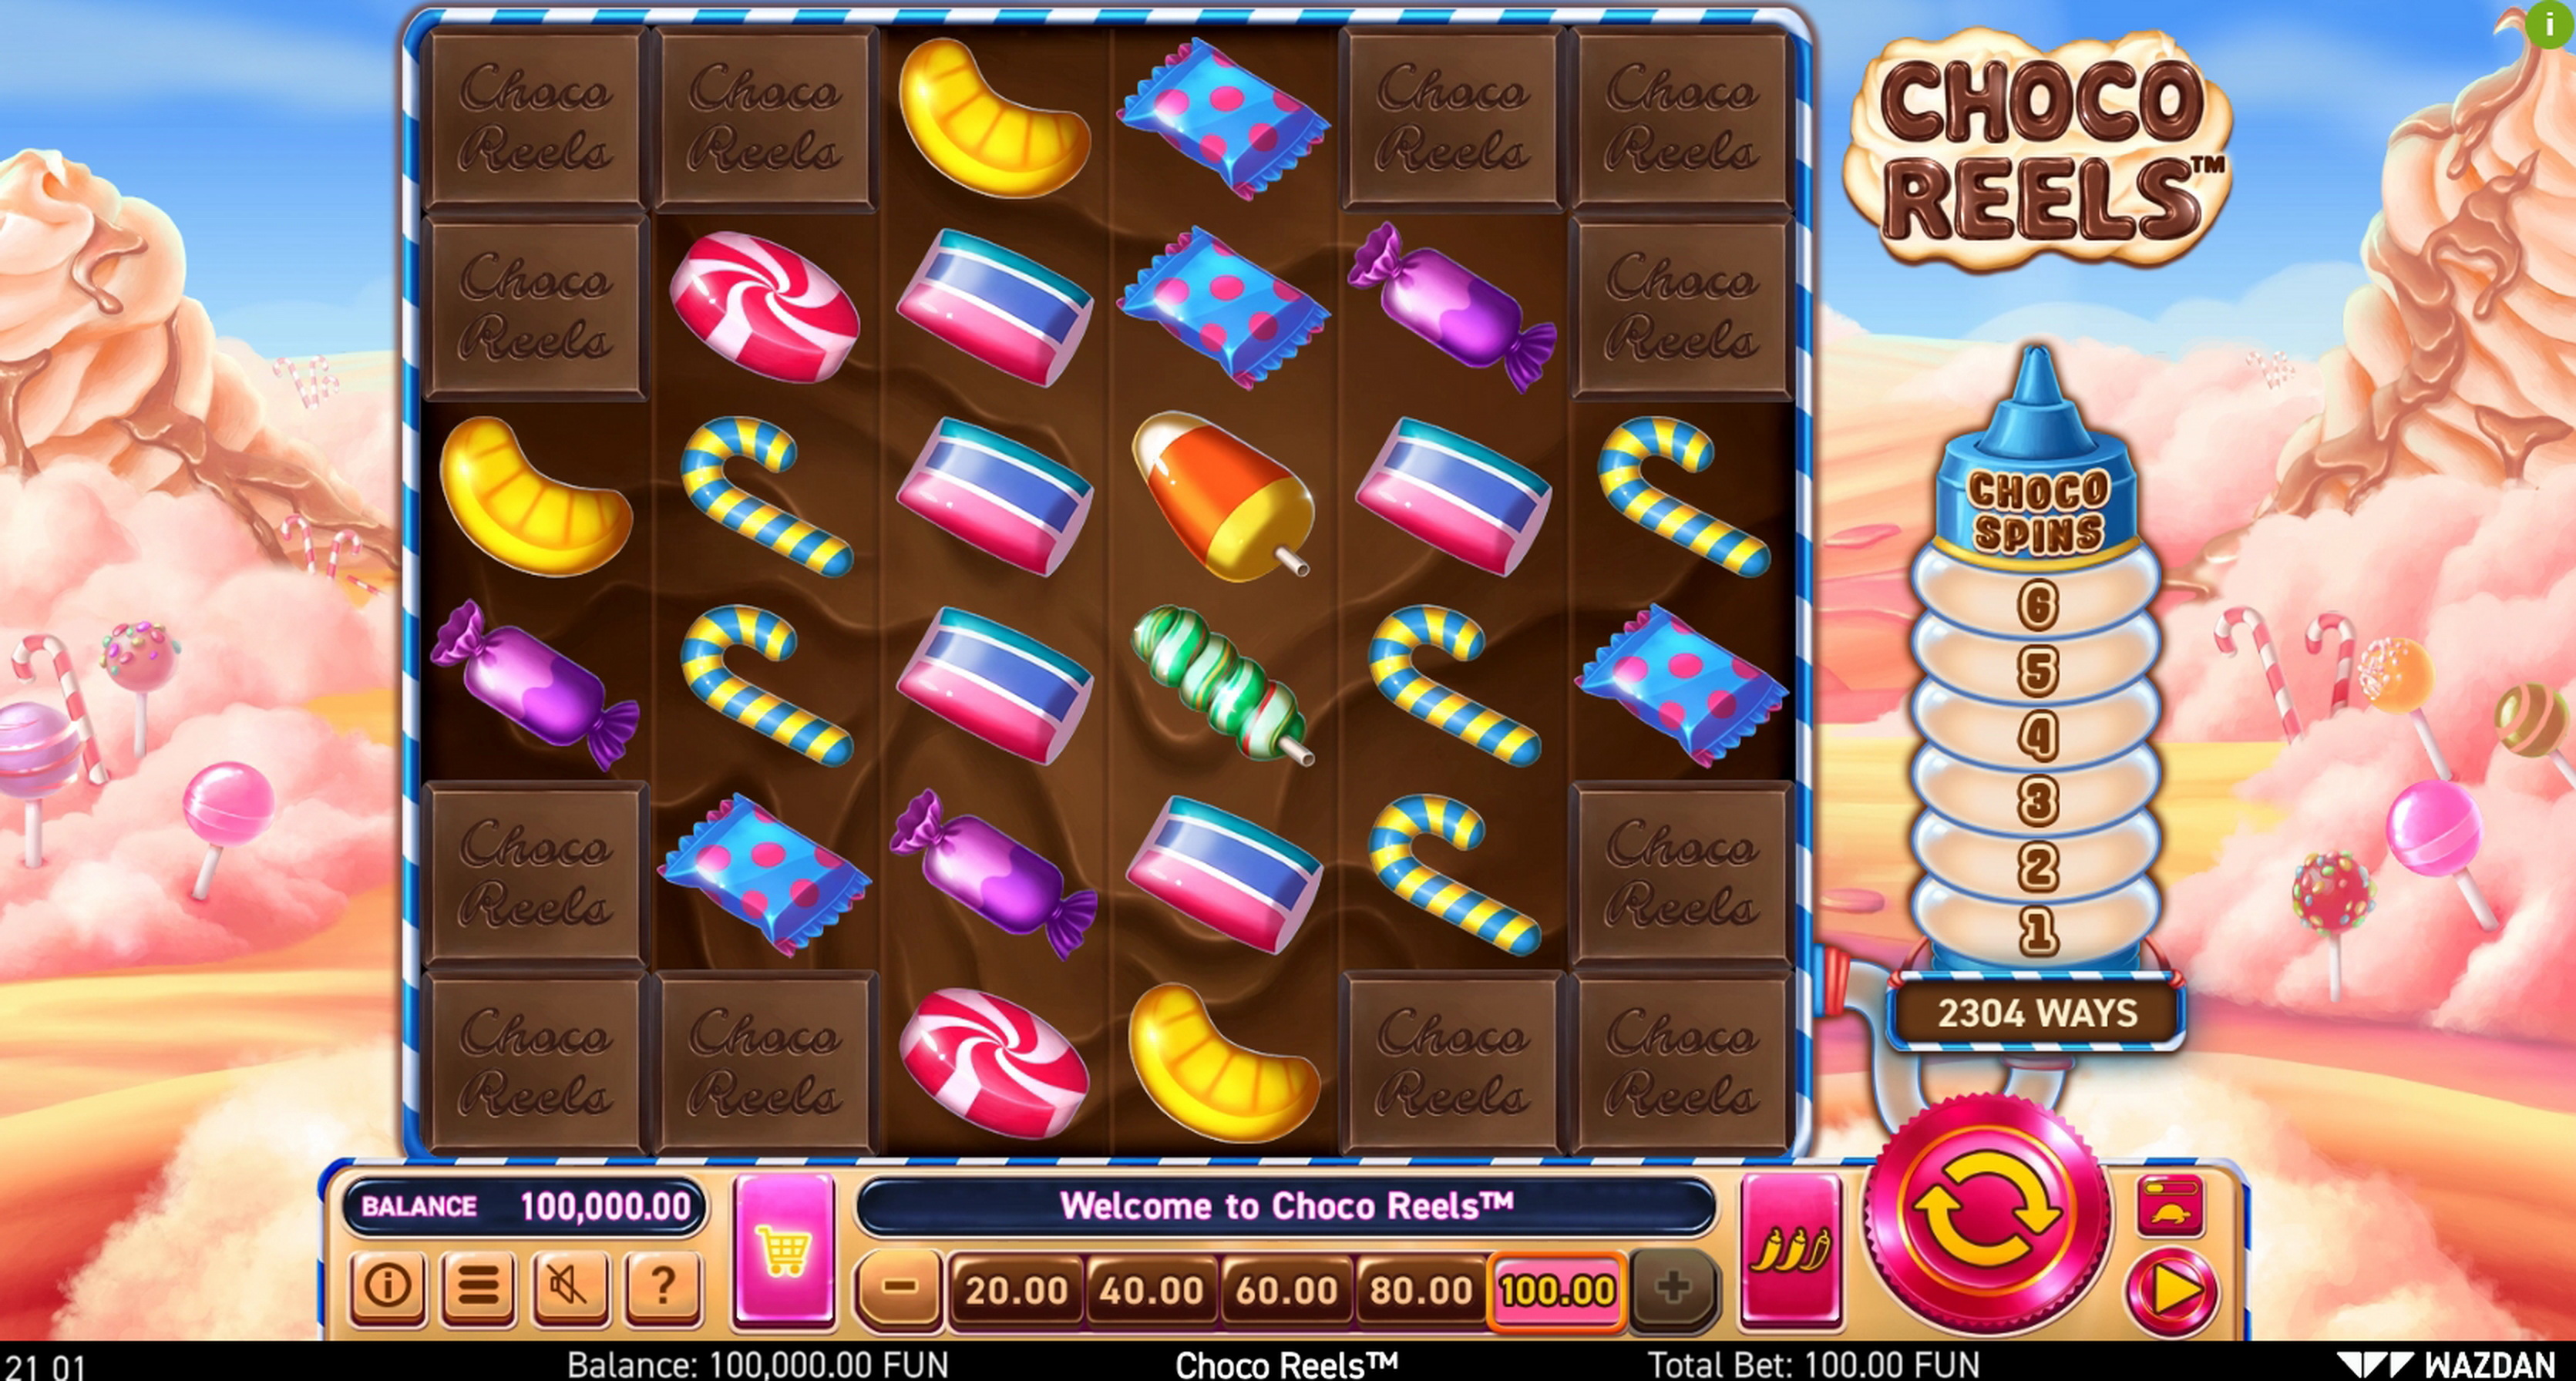 Reels in Choco Reels Slot Game by Wazdan